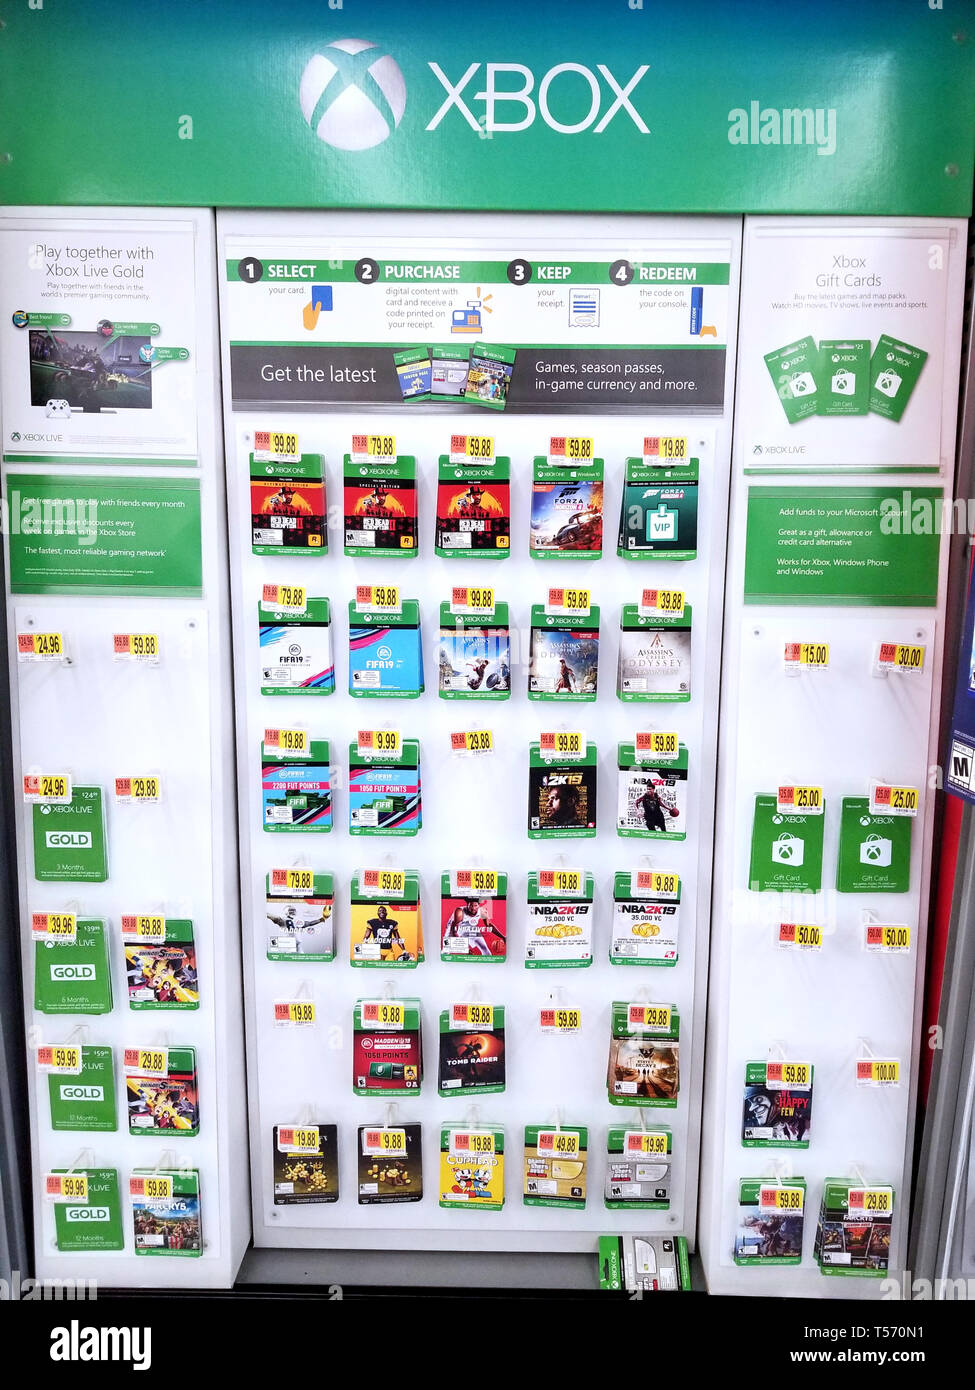 PLATTSBURGH, USA - Januar 21, 2019: Xbox video games Regale in Walmart  Stores voller video spiel download Spiele und Saisonkarten für verschiedene  Vide Stockfotografie - Alamy